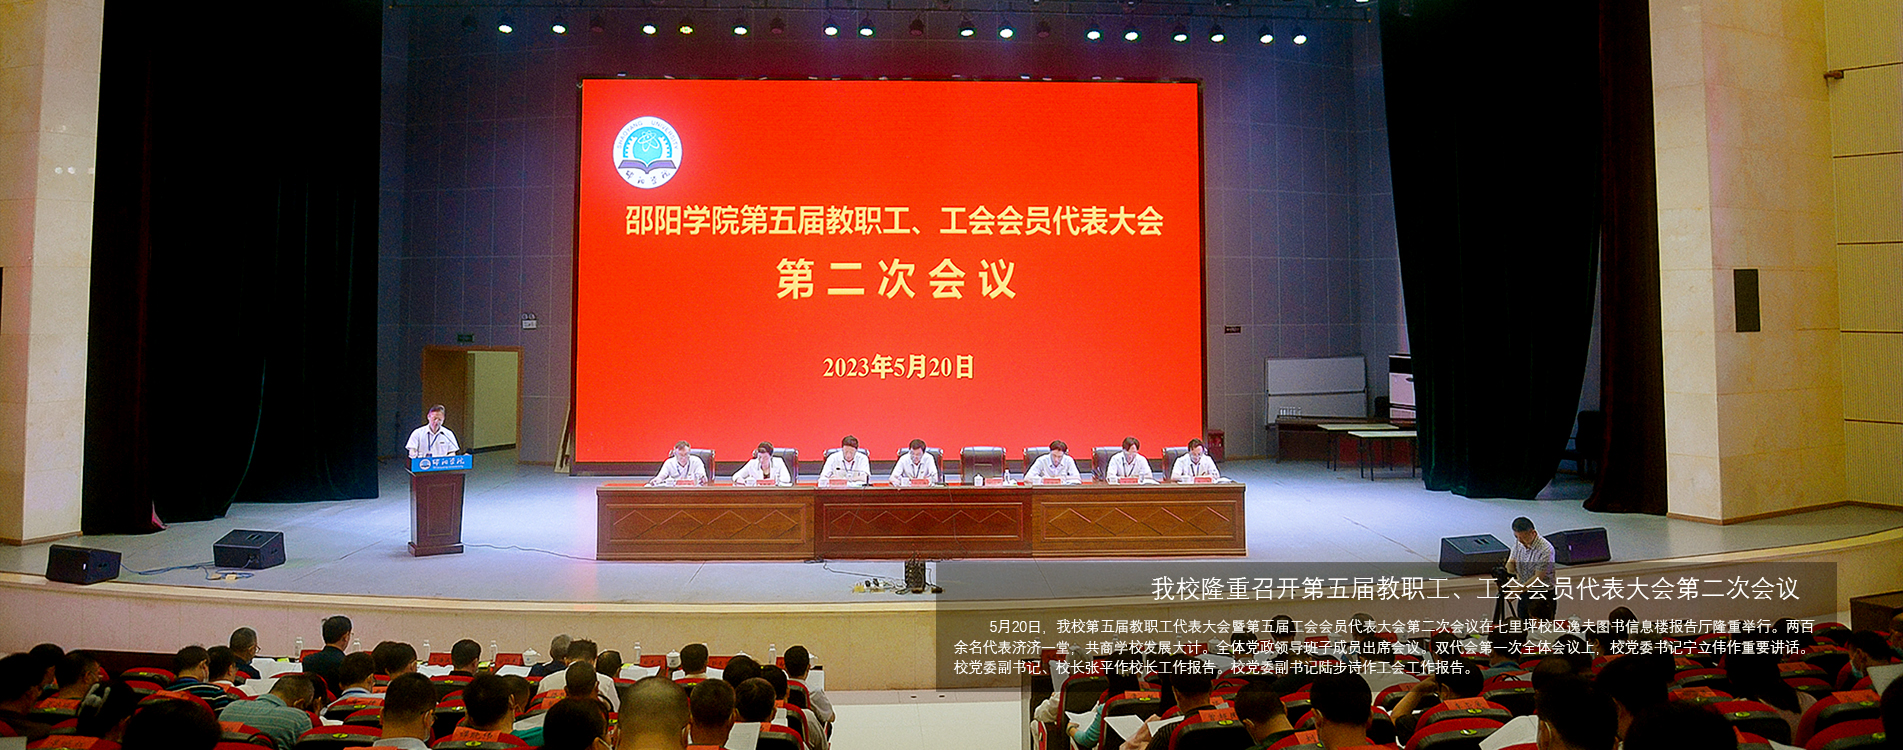 中国体彩网手机版隆重召开第五届教职工、工会会员代表大会第二次会议 余晓冬.jpg